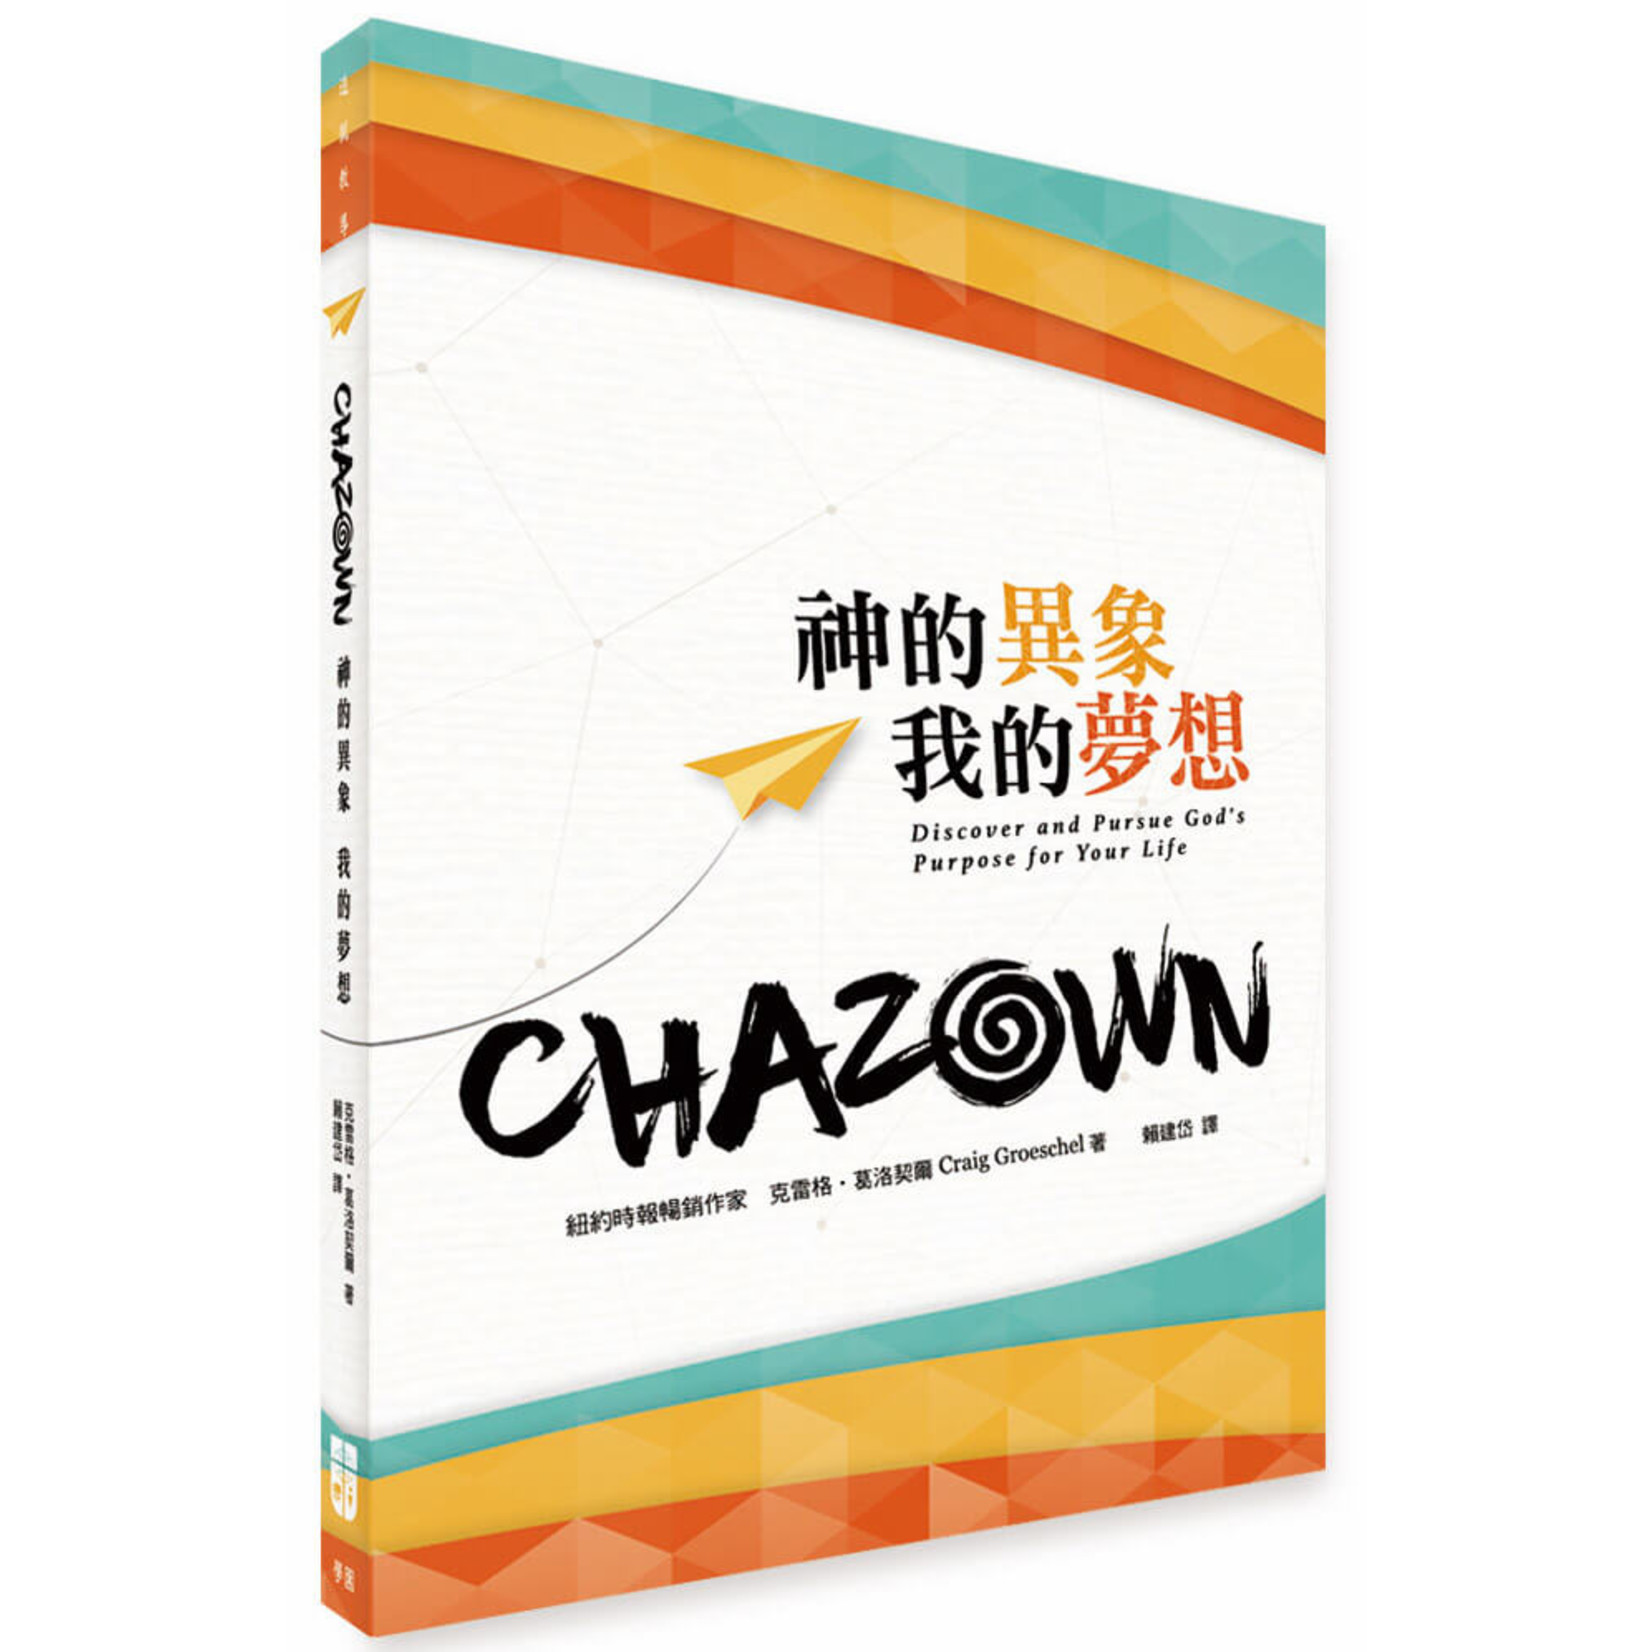 中國學園傳道會 Taiwan Campus Crusade for Christ CHAZOWN：神的異象我的夢想 | (Chazown: Discover and Pursue God's Purpose for Your Life)